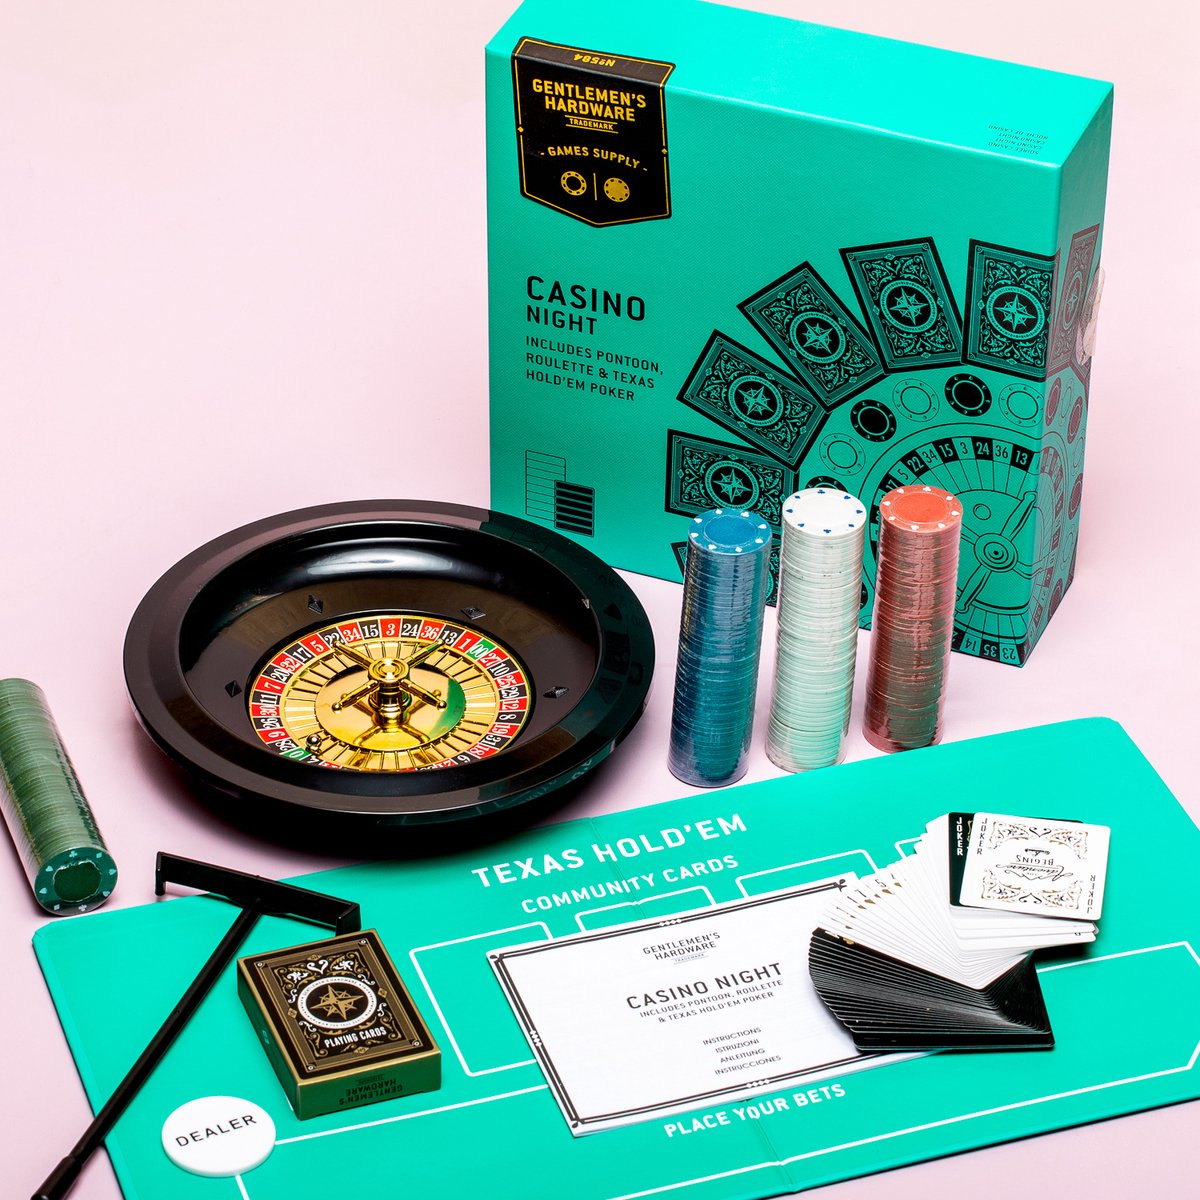 Gentlemens Hardware Mini Roulette Spel - Compact Formaat - Organiseer Thuis Je Eigen Casino Avond